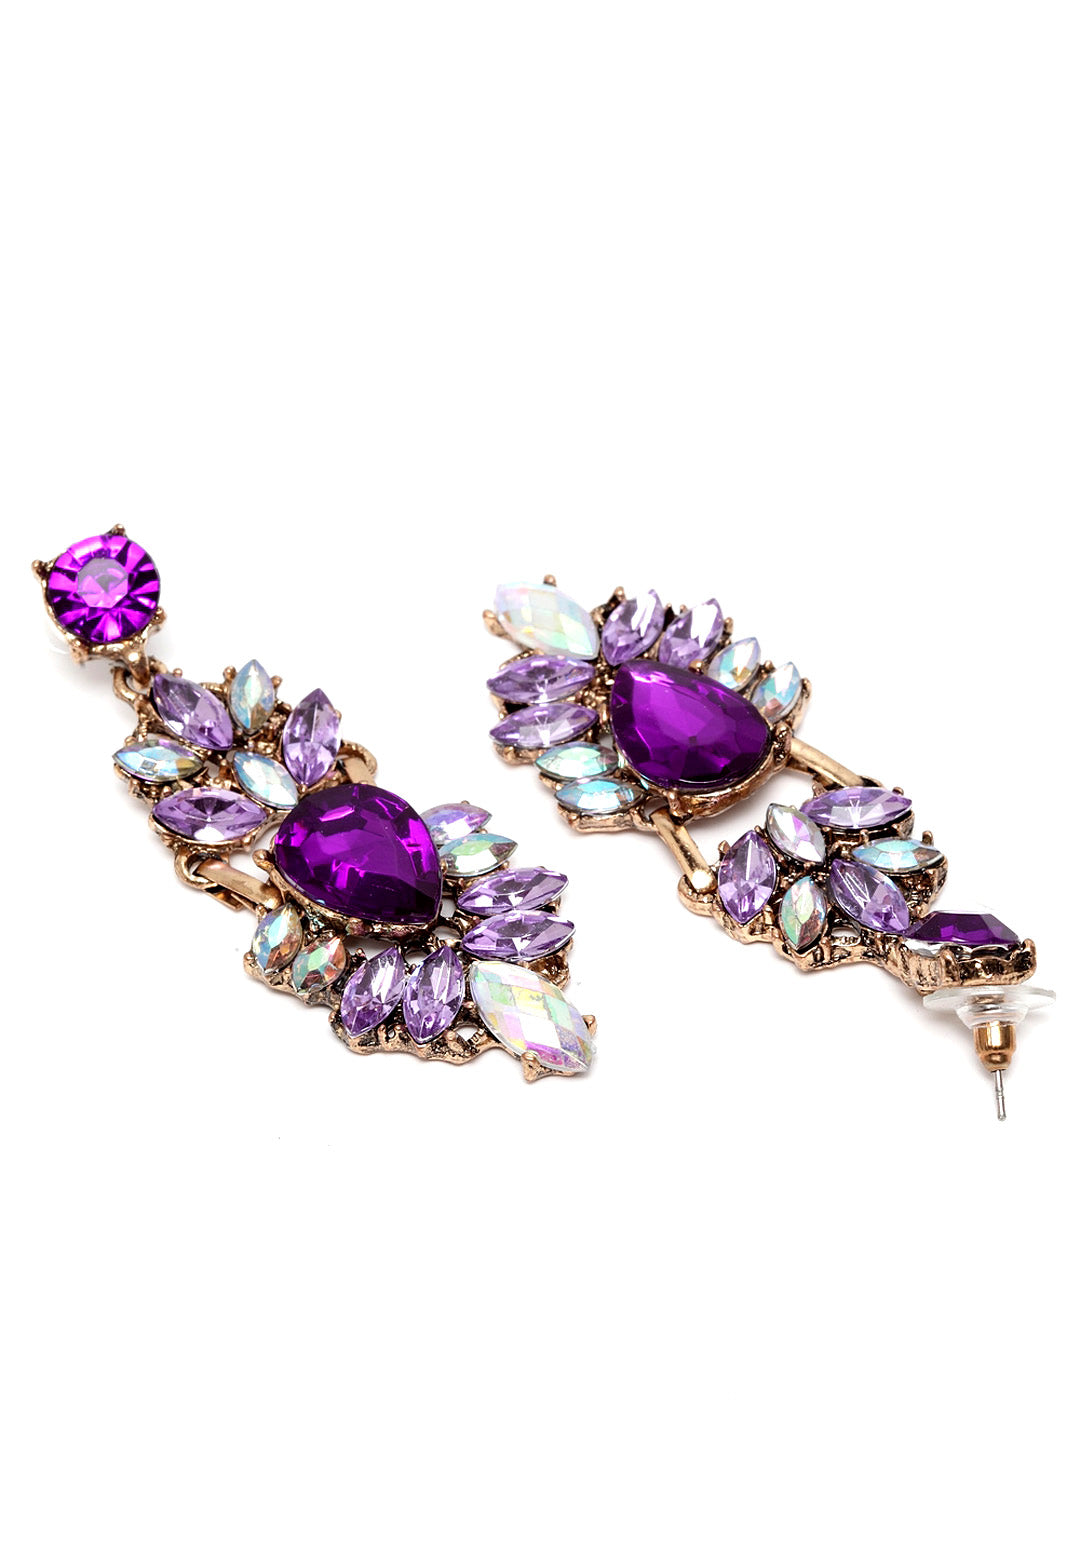 Avant-Garde Paris Mystery Purple Bohemian Multicolored Vintage Statement Earrings